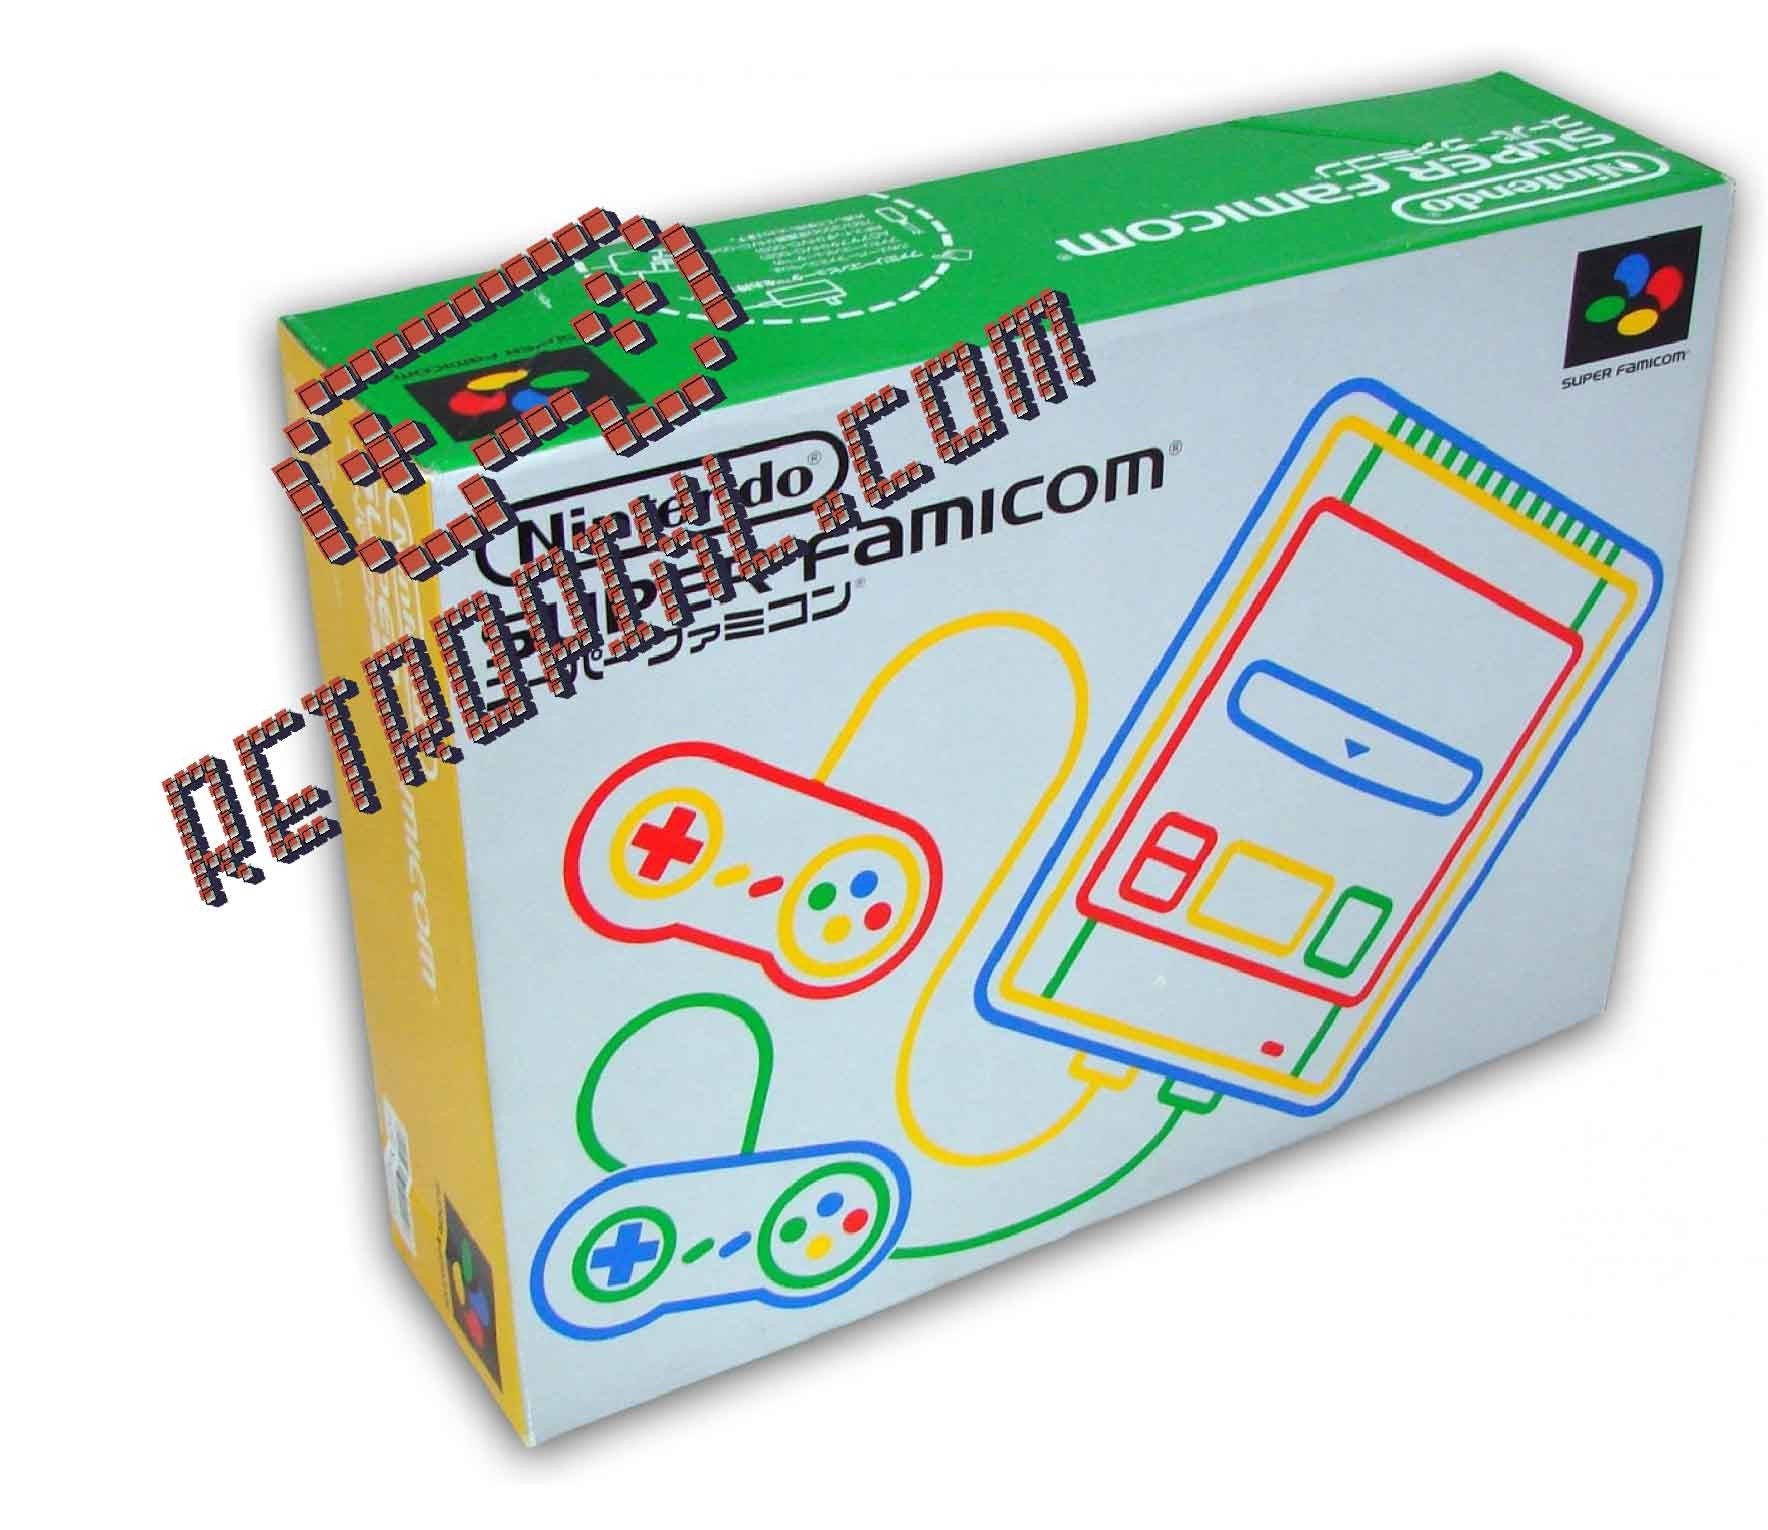 Nintendo Super Famicom – RetroPixl